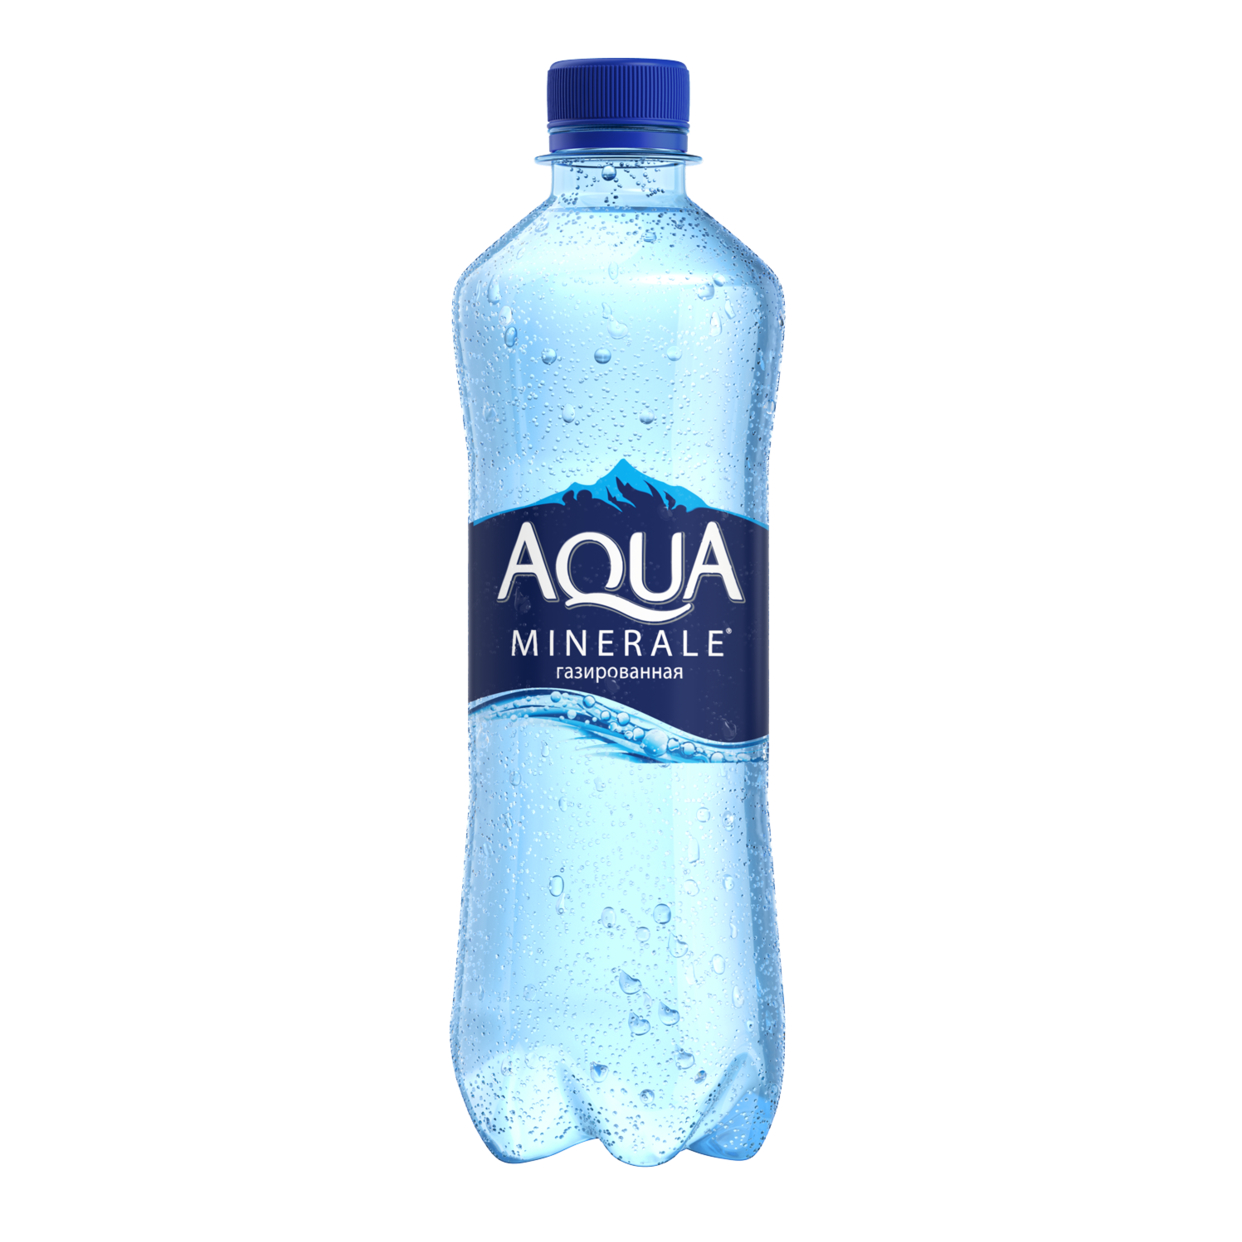 Вода питьевая газированная первой категории под товарным знаком "Аква Минерале" 0.5л по акции в Пятерочке